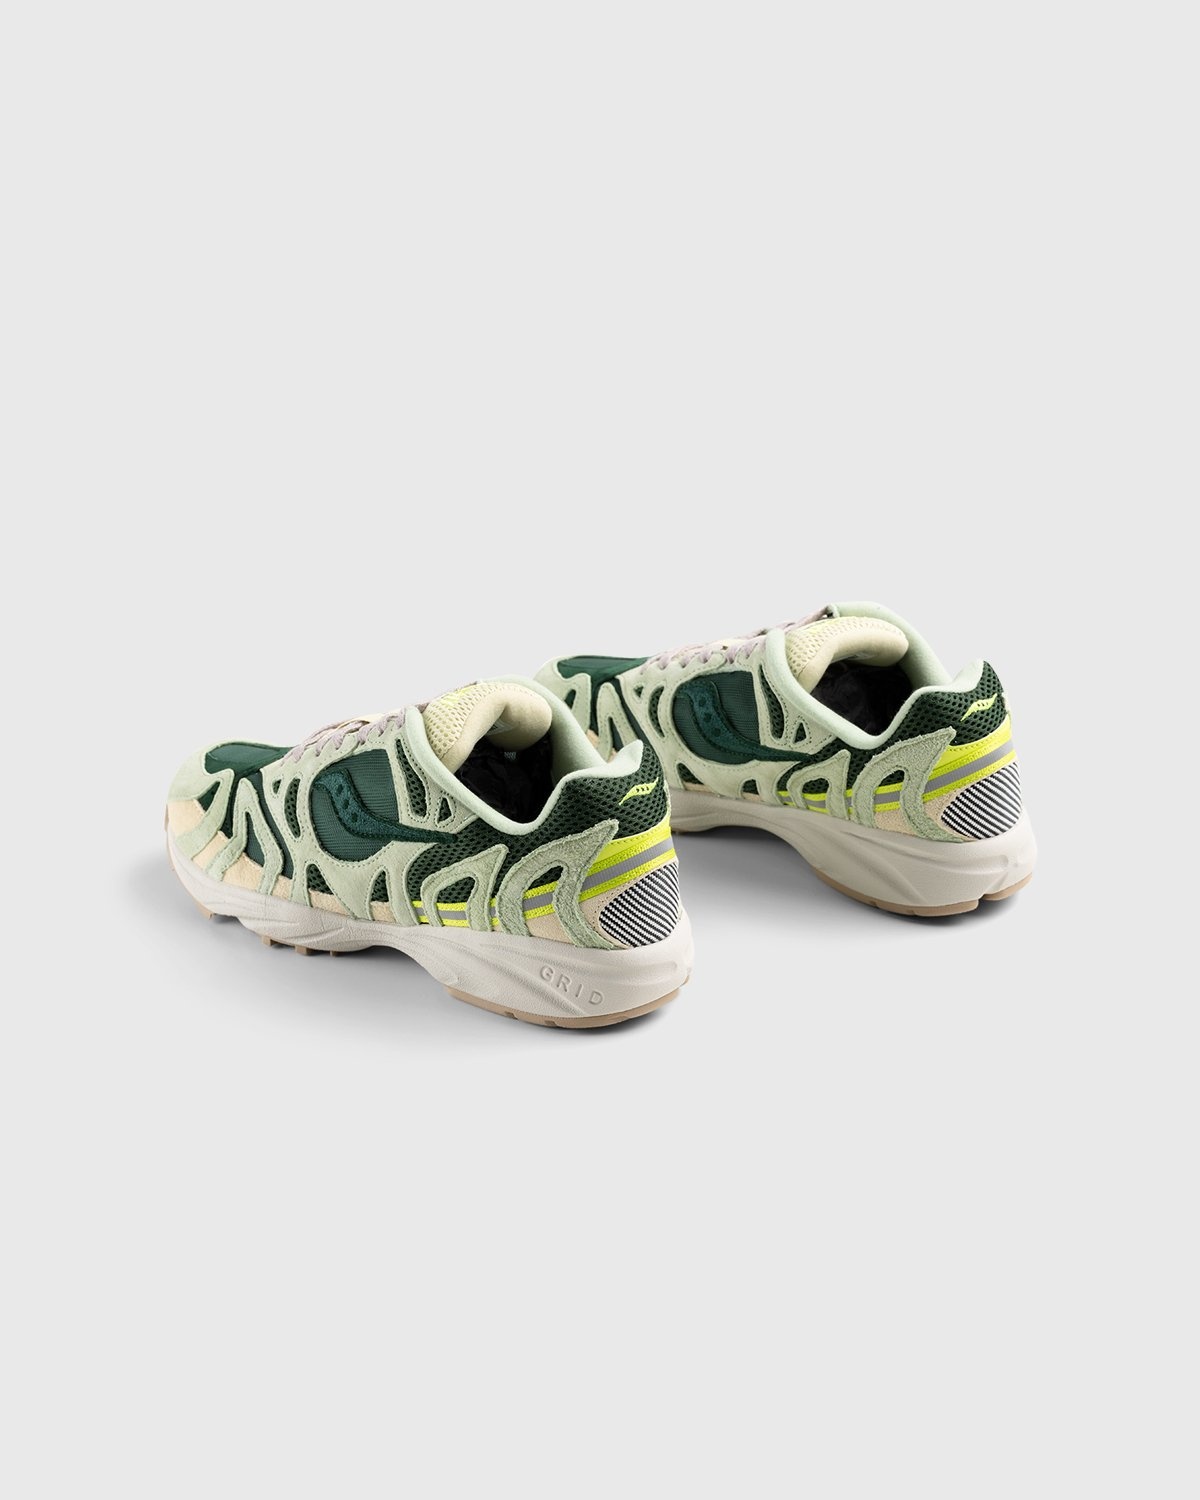 Saucony – Grid Azura 2000 Green - Low Top Sneakers - Green - Image 3